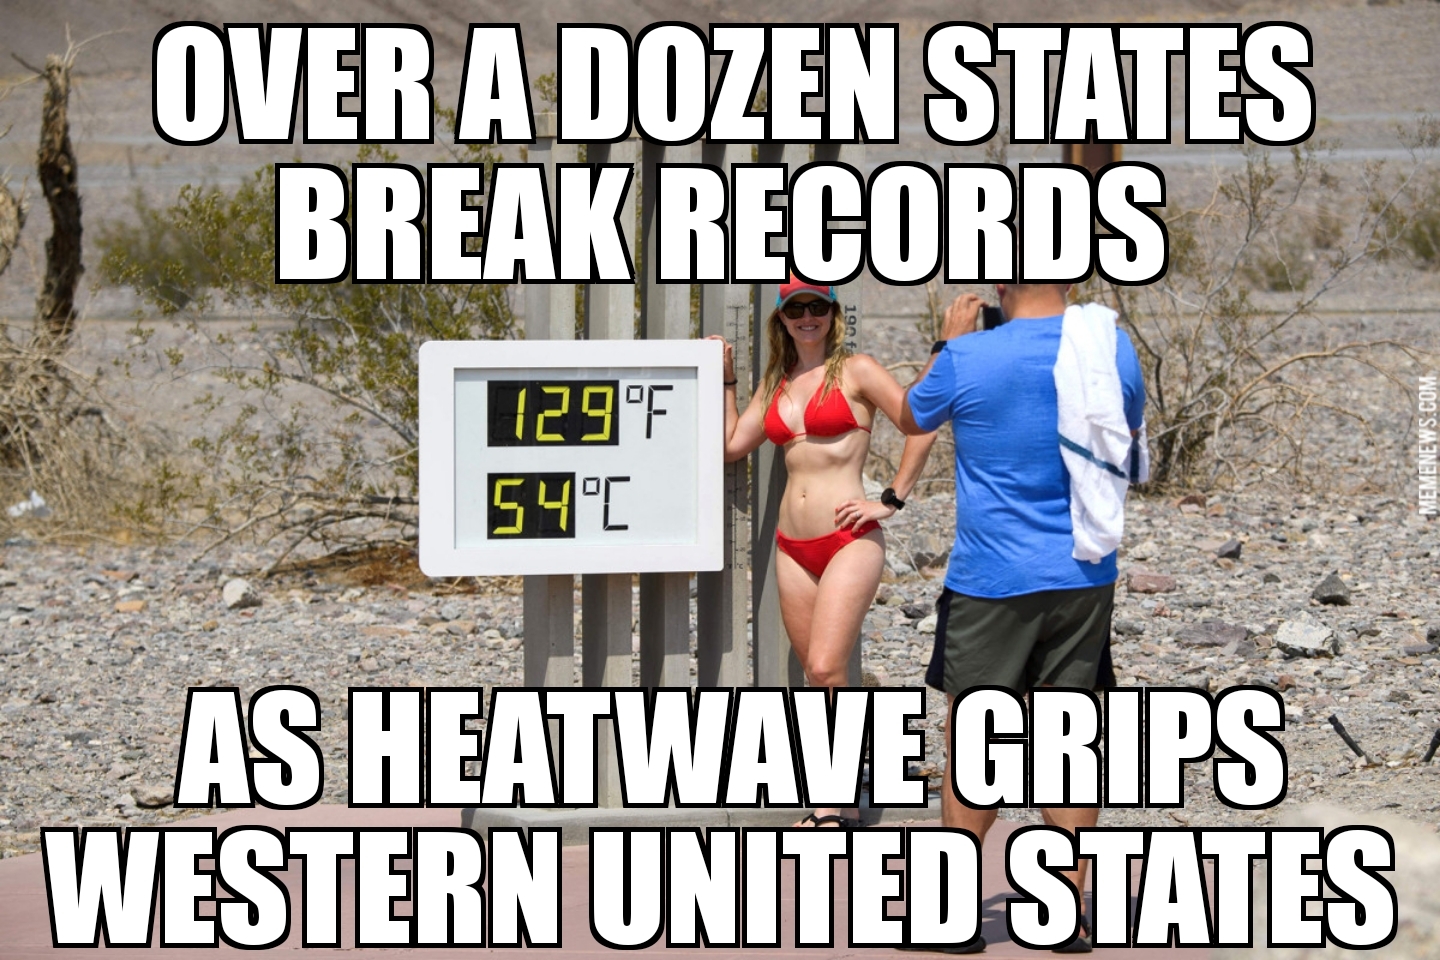 Western heatwave